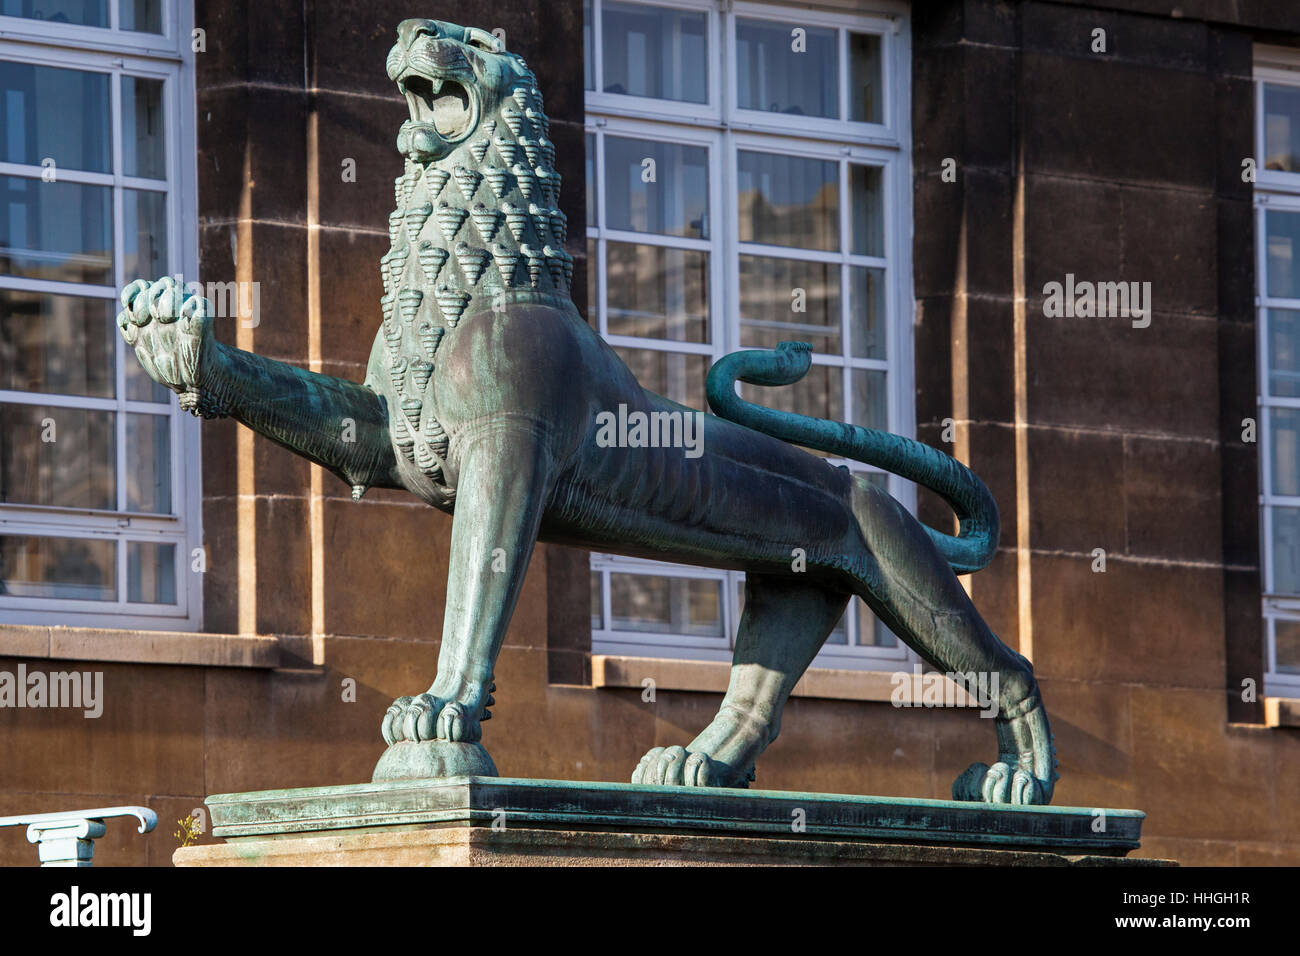 Un lion héraldique l'extérieur de l'entrée de hôtel de ville de Norwich dans le centre historique de la ville de Norwich, Royaume-Uni. Banque D'Images